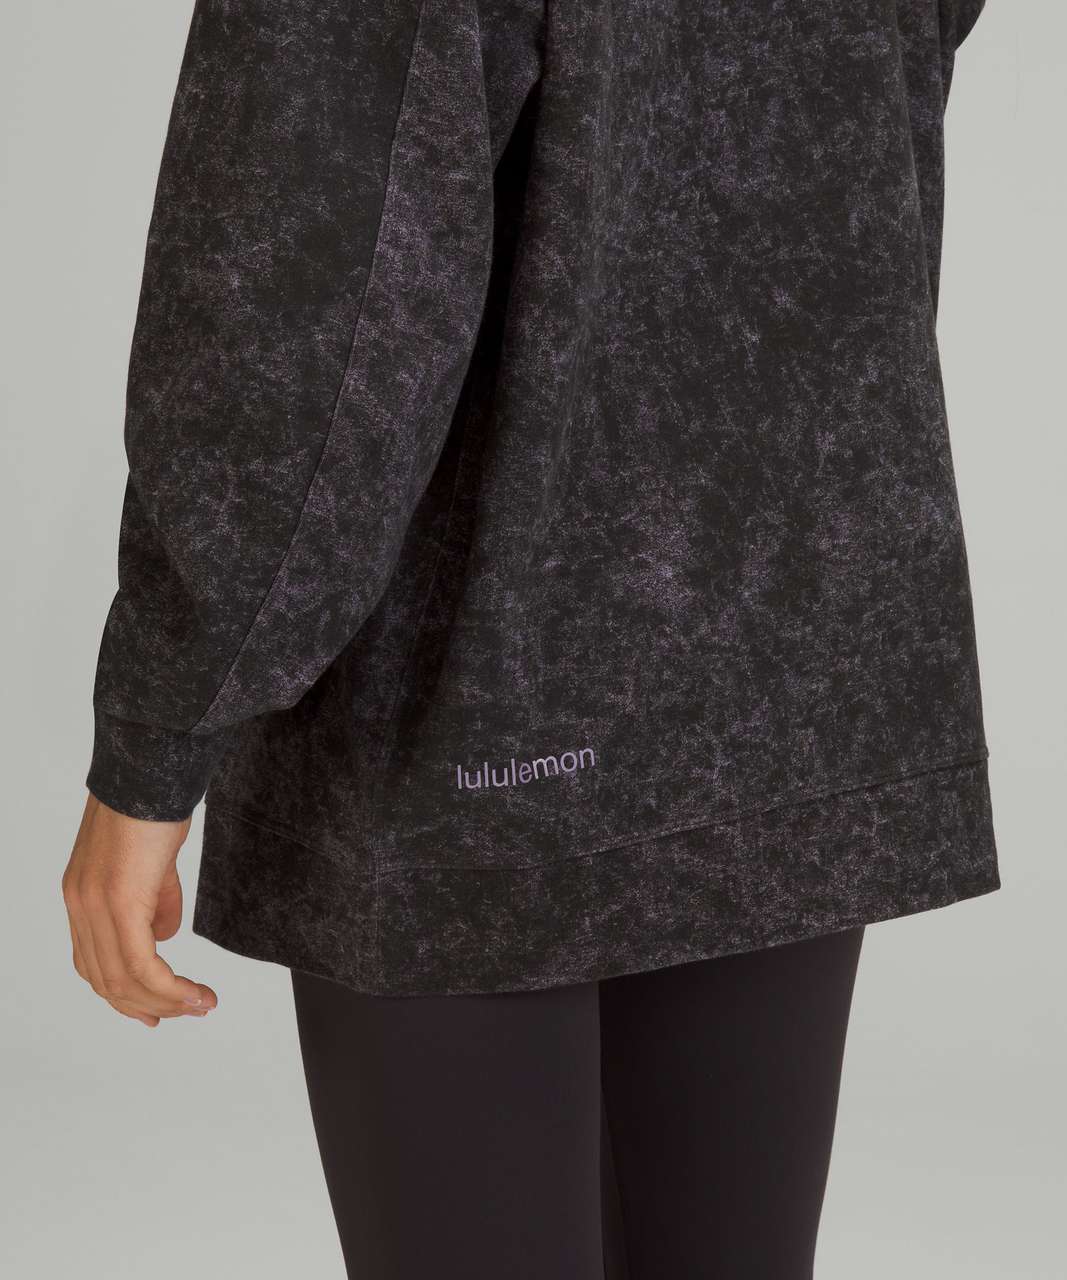 NEW! Lululemon Women's Perfectly Oversized Hoodie Sweatshirt Soft